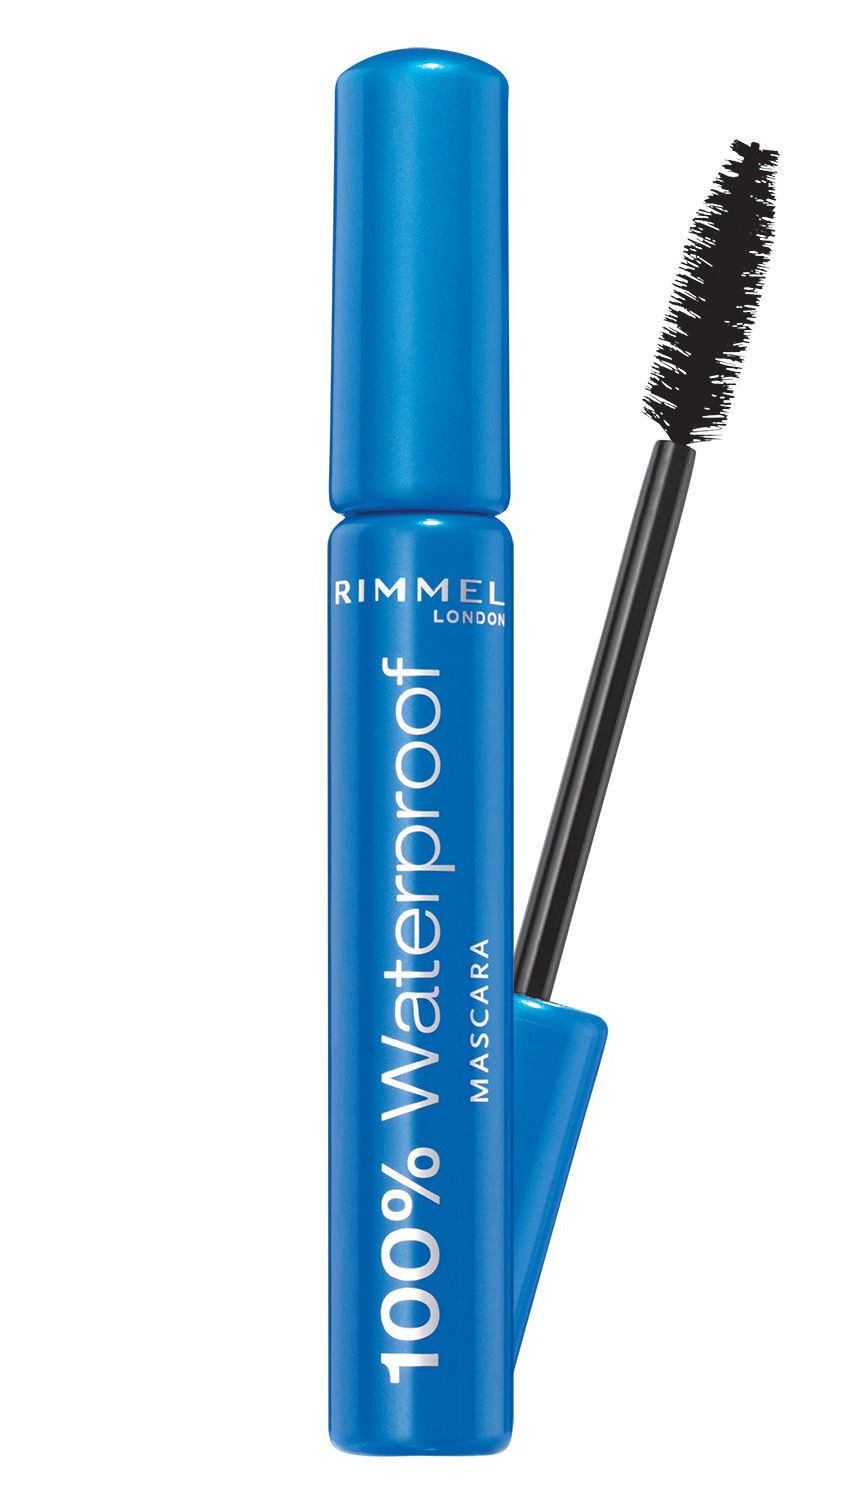 Rimmel London 100% Waterproof Mascara